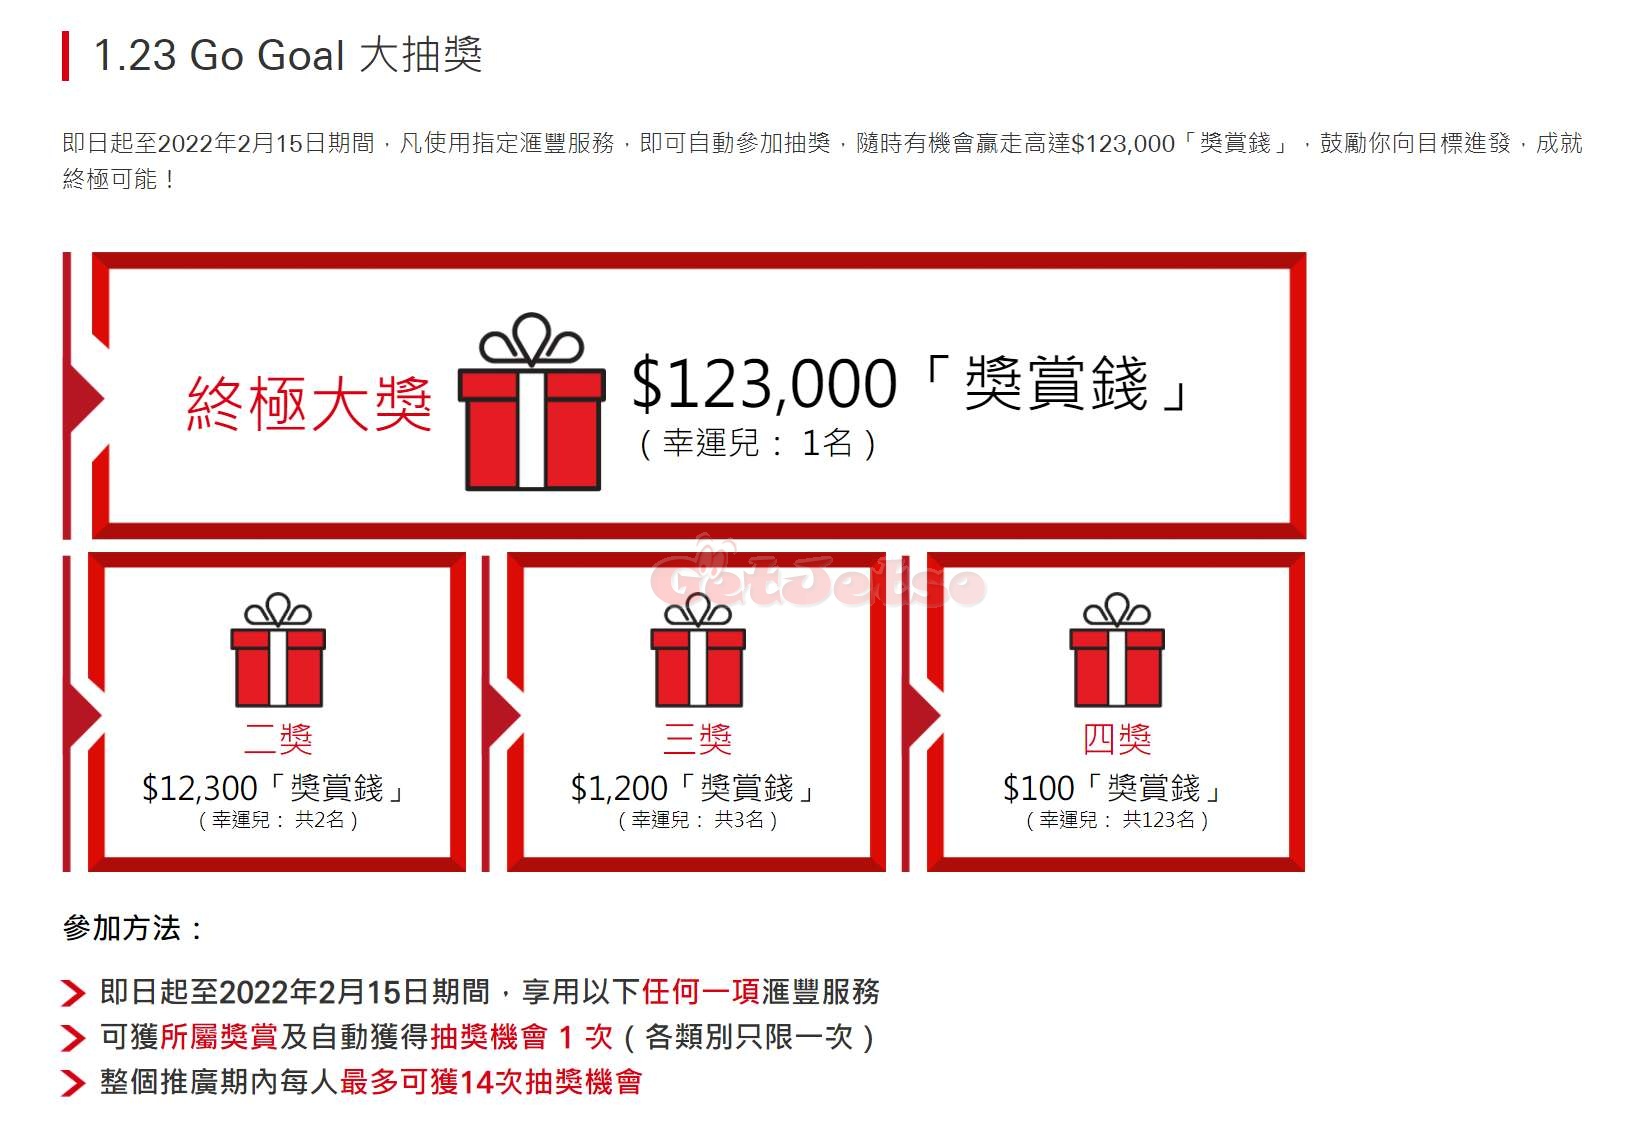 滙豐銀行1.23 Go Goal大抽獎優惠(至22年2月15日)圖片2